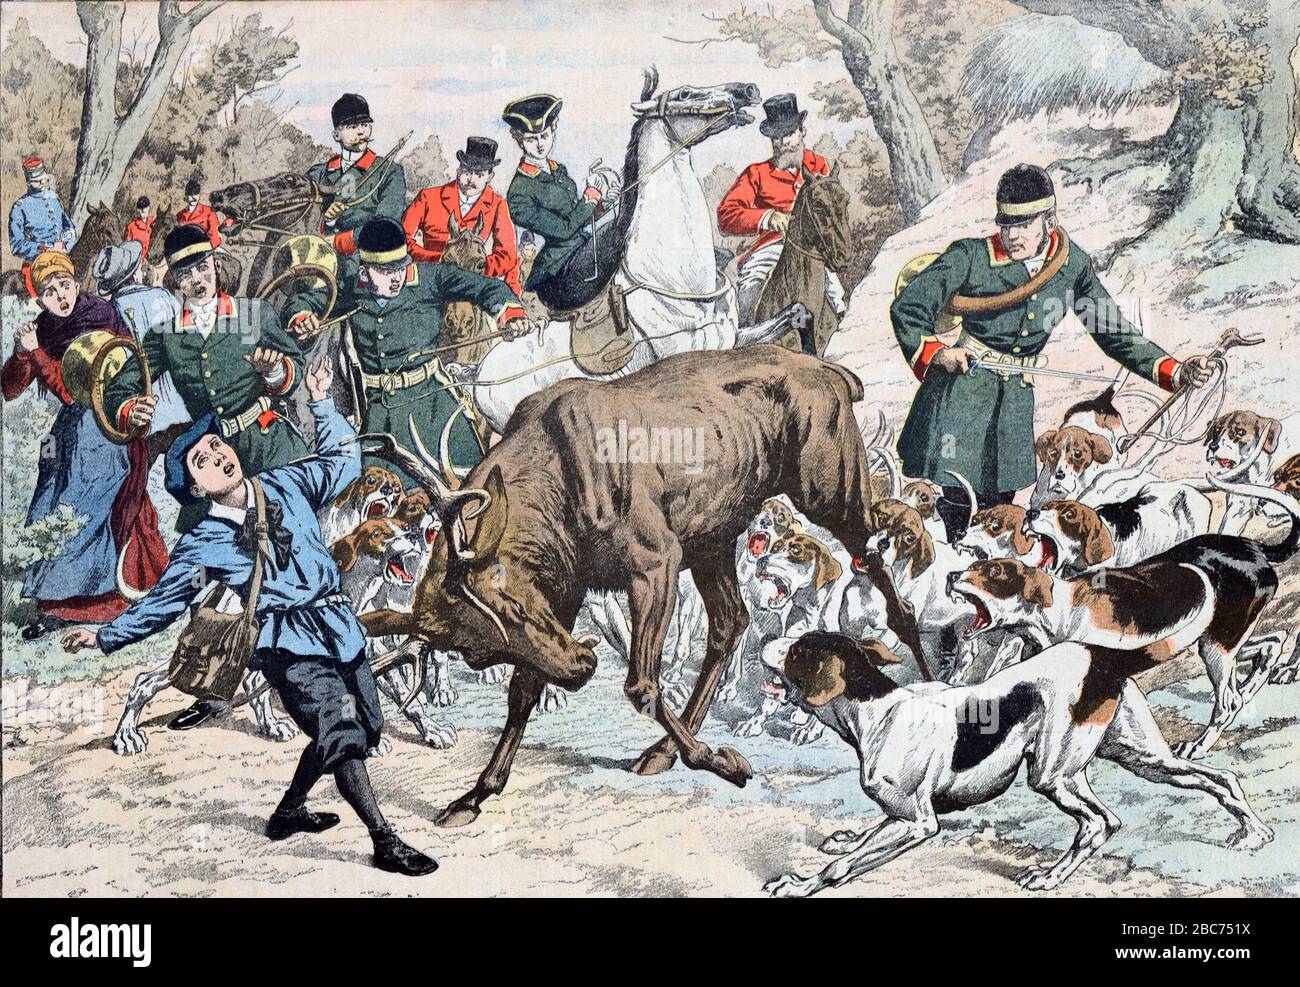 Der Junge wurde von Stag bei einem Jagdunfall verletzt, während er in Chantilly Forest France auf der Jagd nach Deer mit einem Hundpaket war. Alte oder alte Illustration Nov 1904/05 Stockfoto